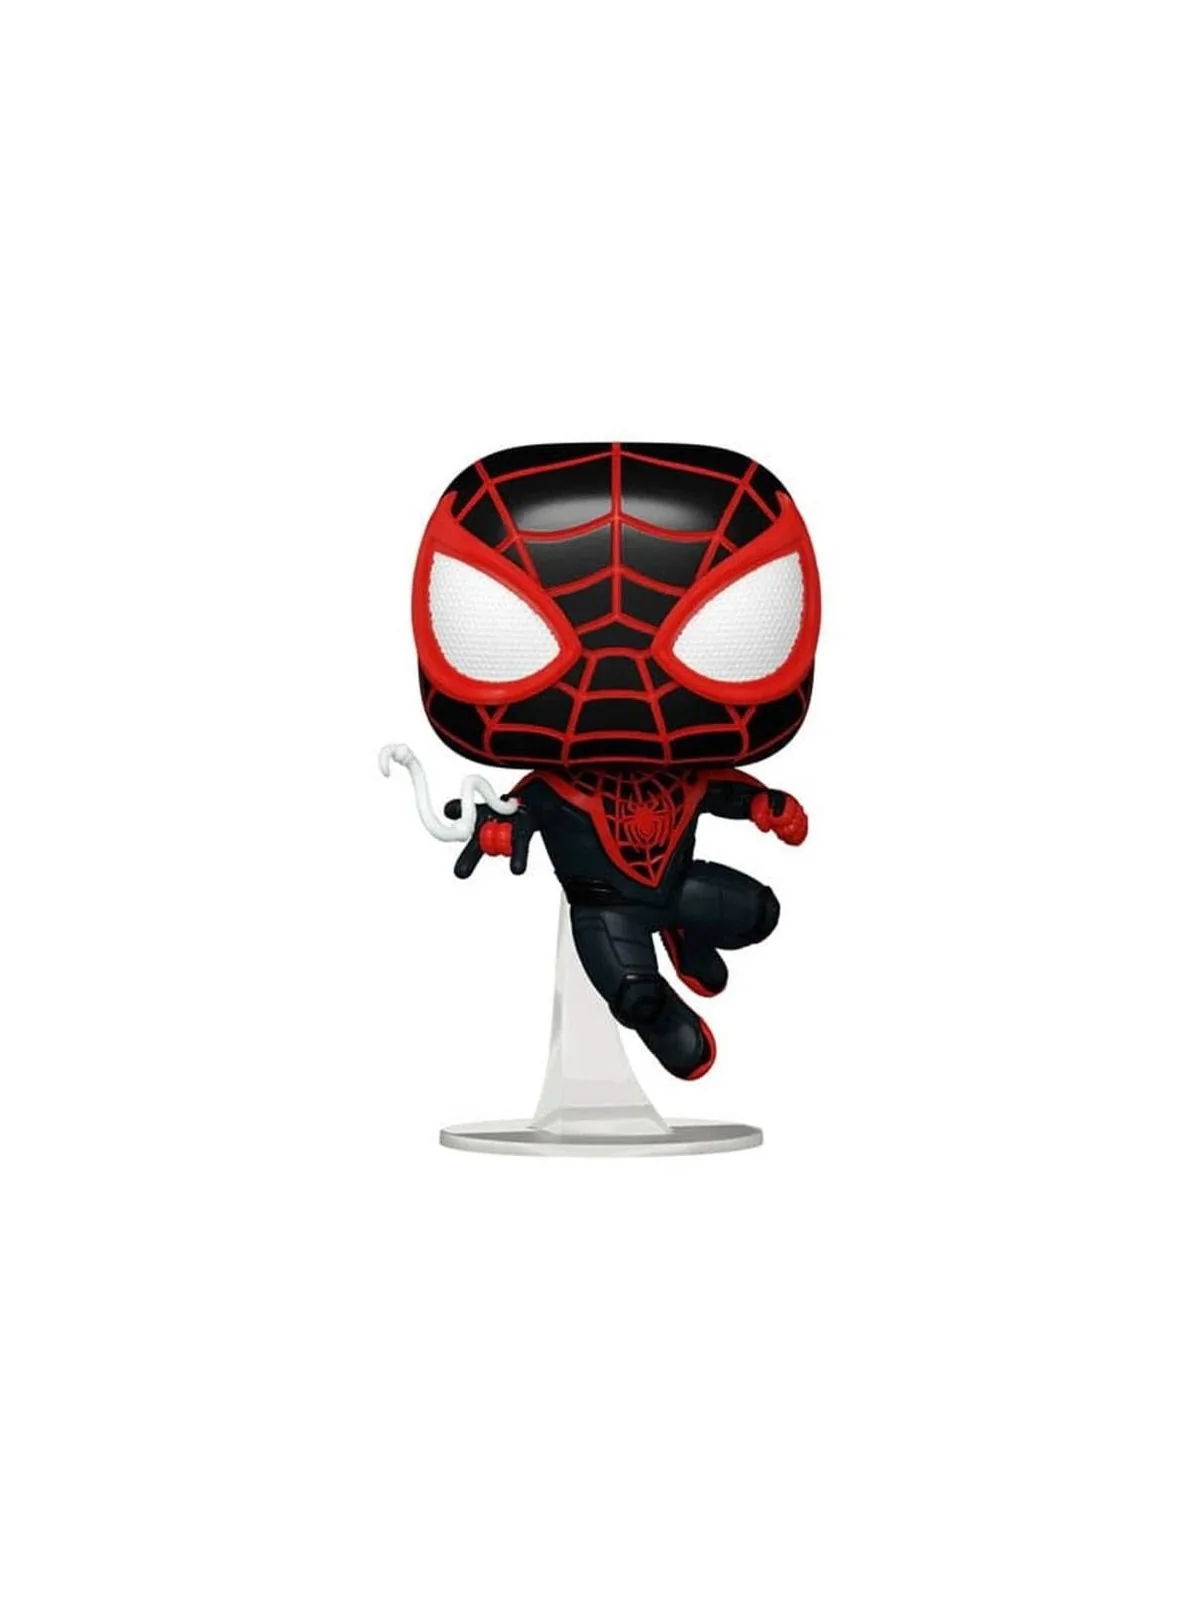 Comprar Funko POP! Marvel: Spiderman 2 - Miles Morales (970) barato al